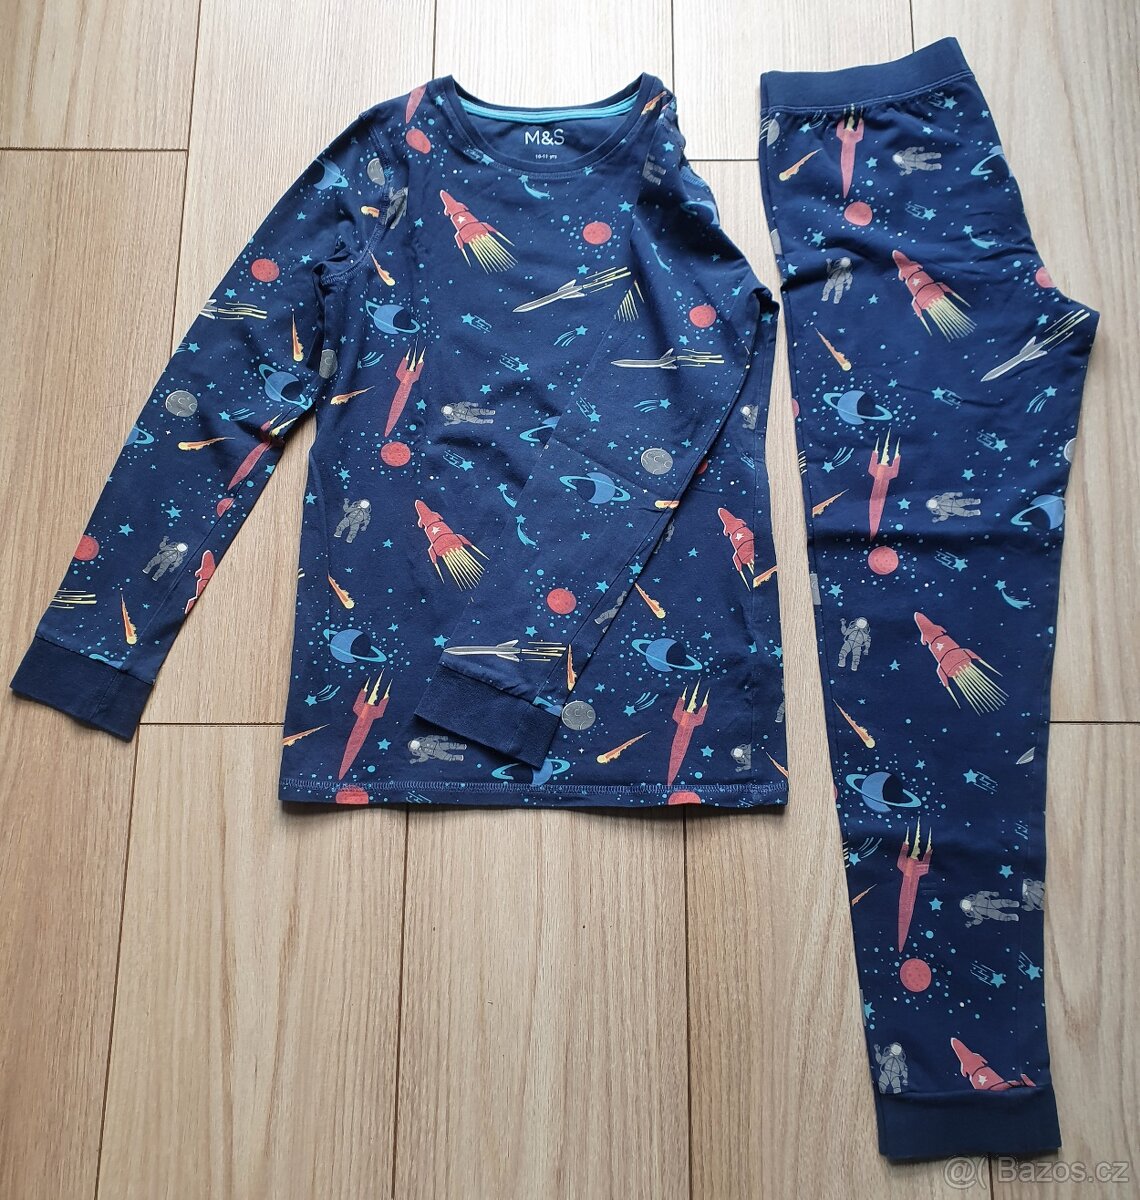 Dětské pyžamo, Marks&Spencer, velikost 146